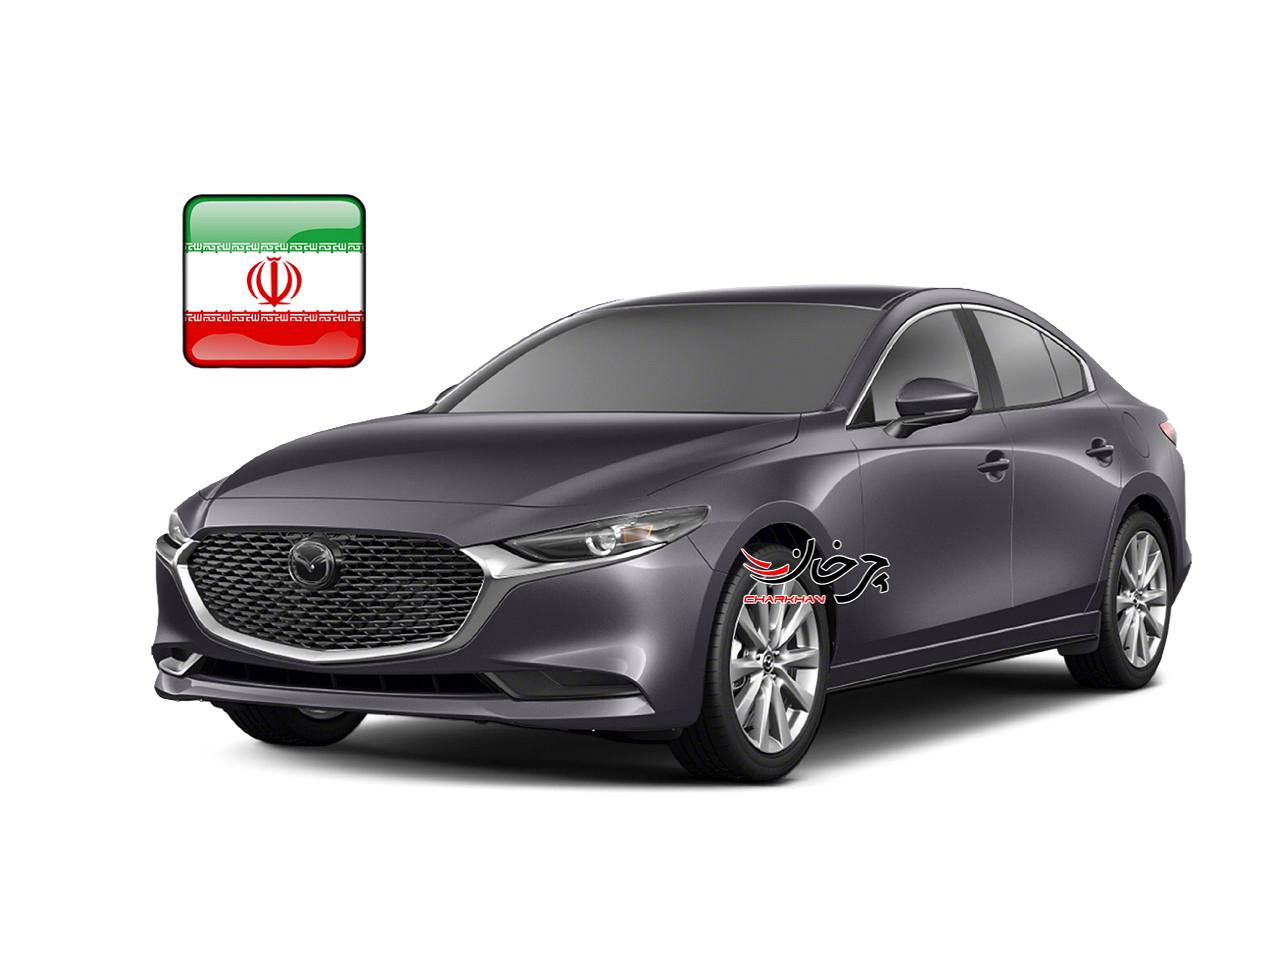 مزدا 3 جدید - MAZDA 3 خودرو وارداتی جدید بازار ایران